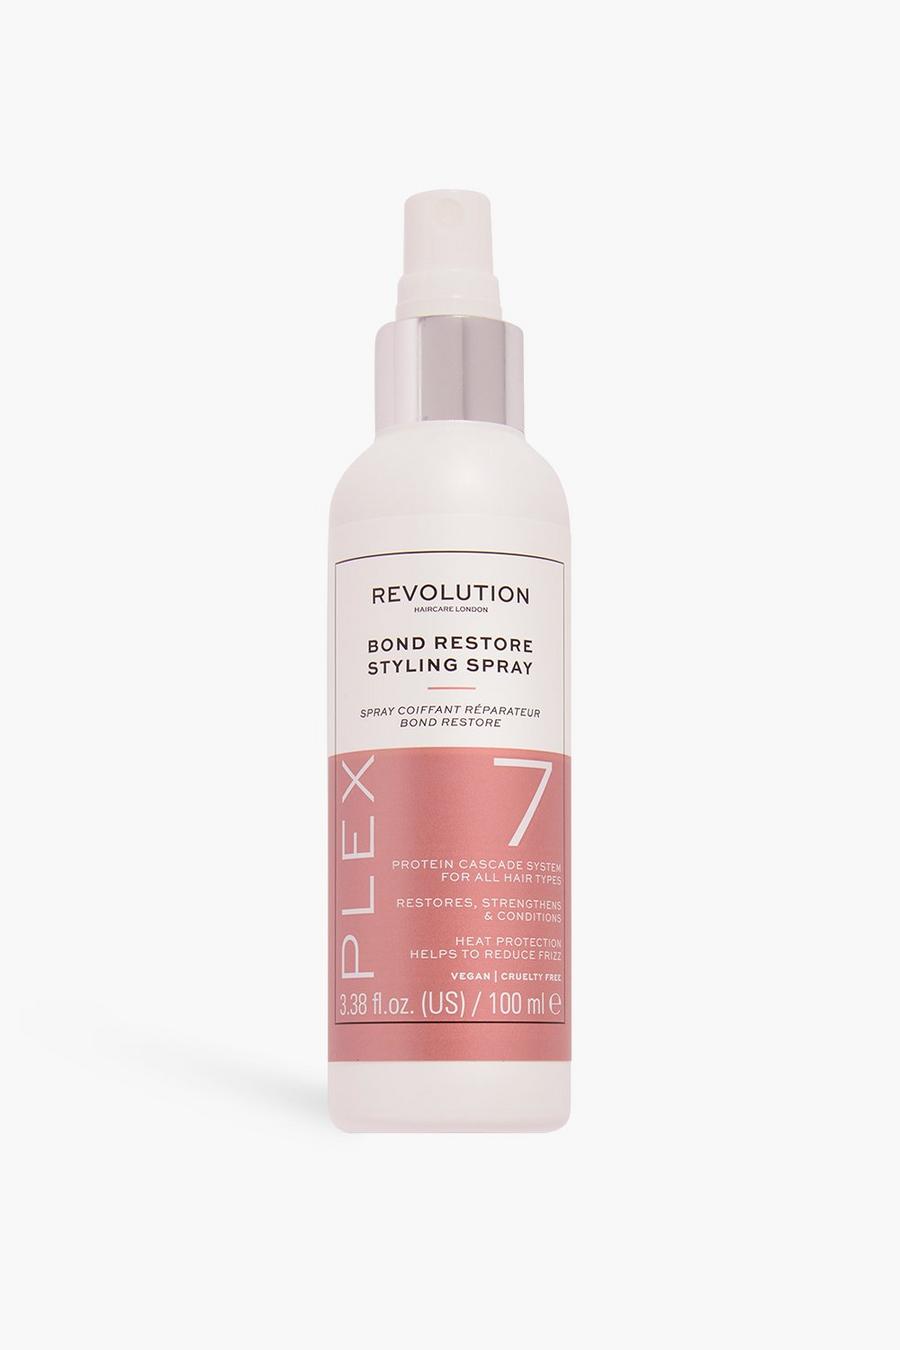 Revolution Hair - Spray per capelli Plex 7 Bond, Rose gold metallizzato